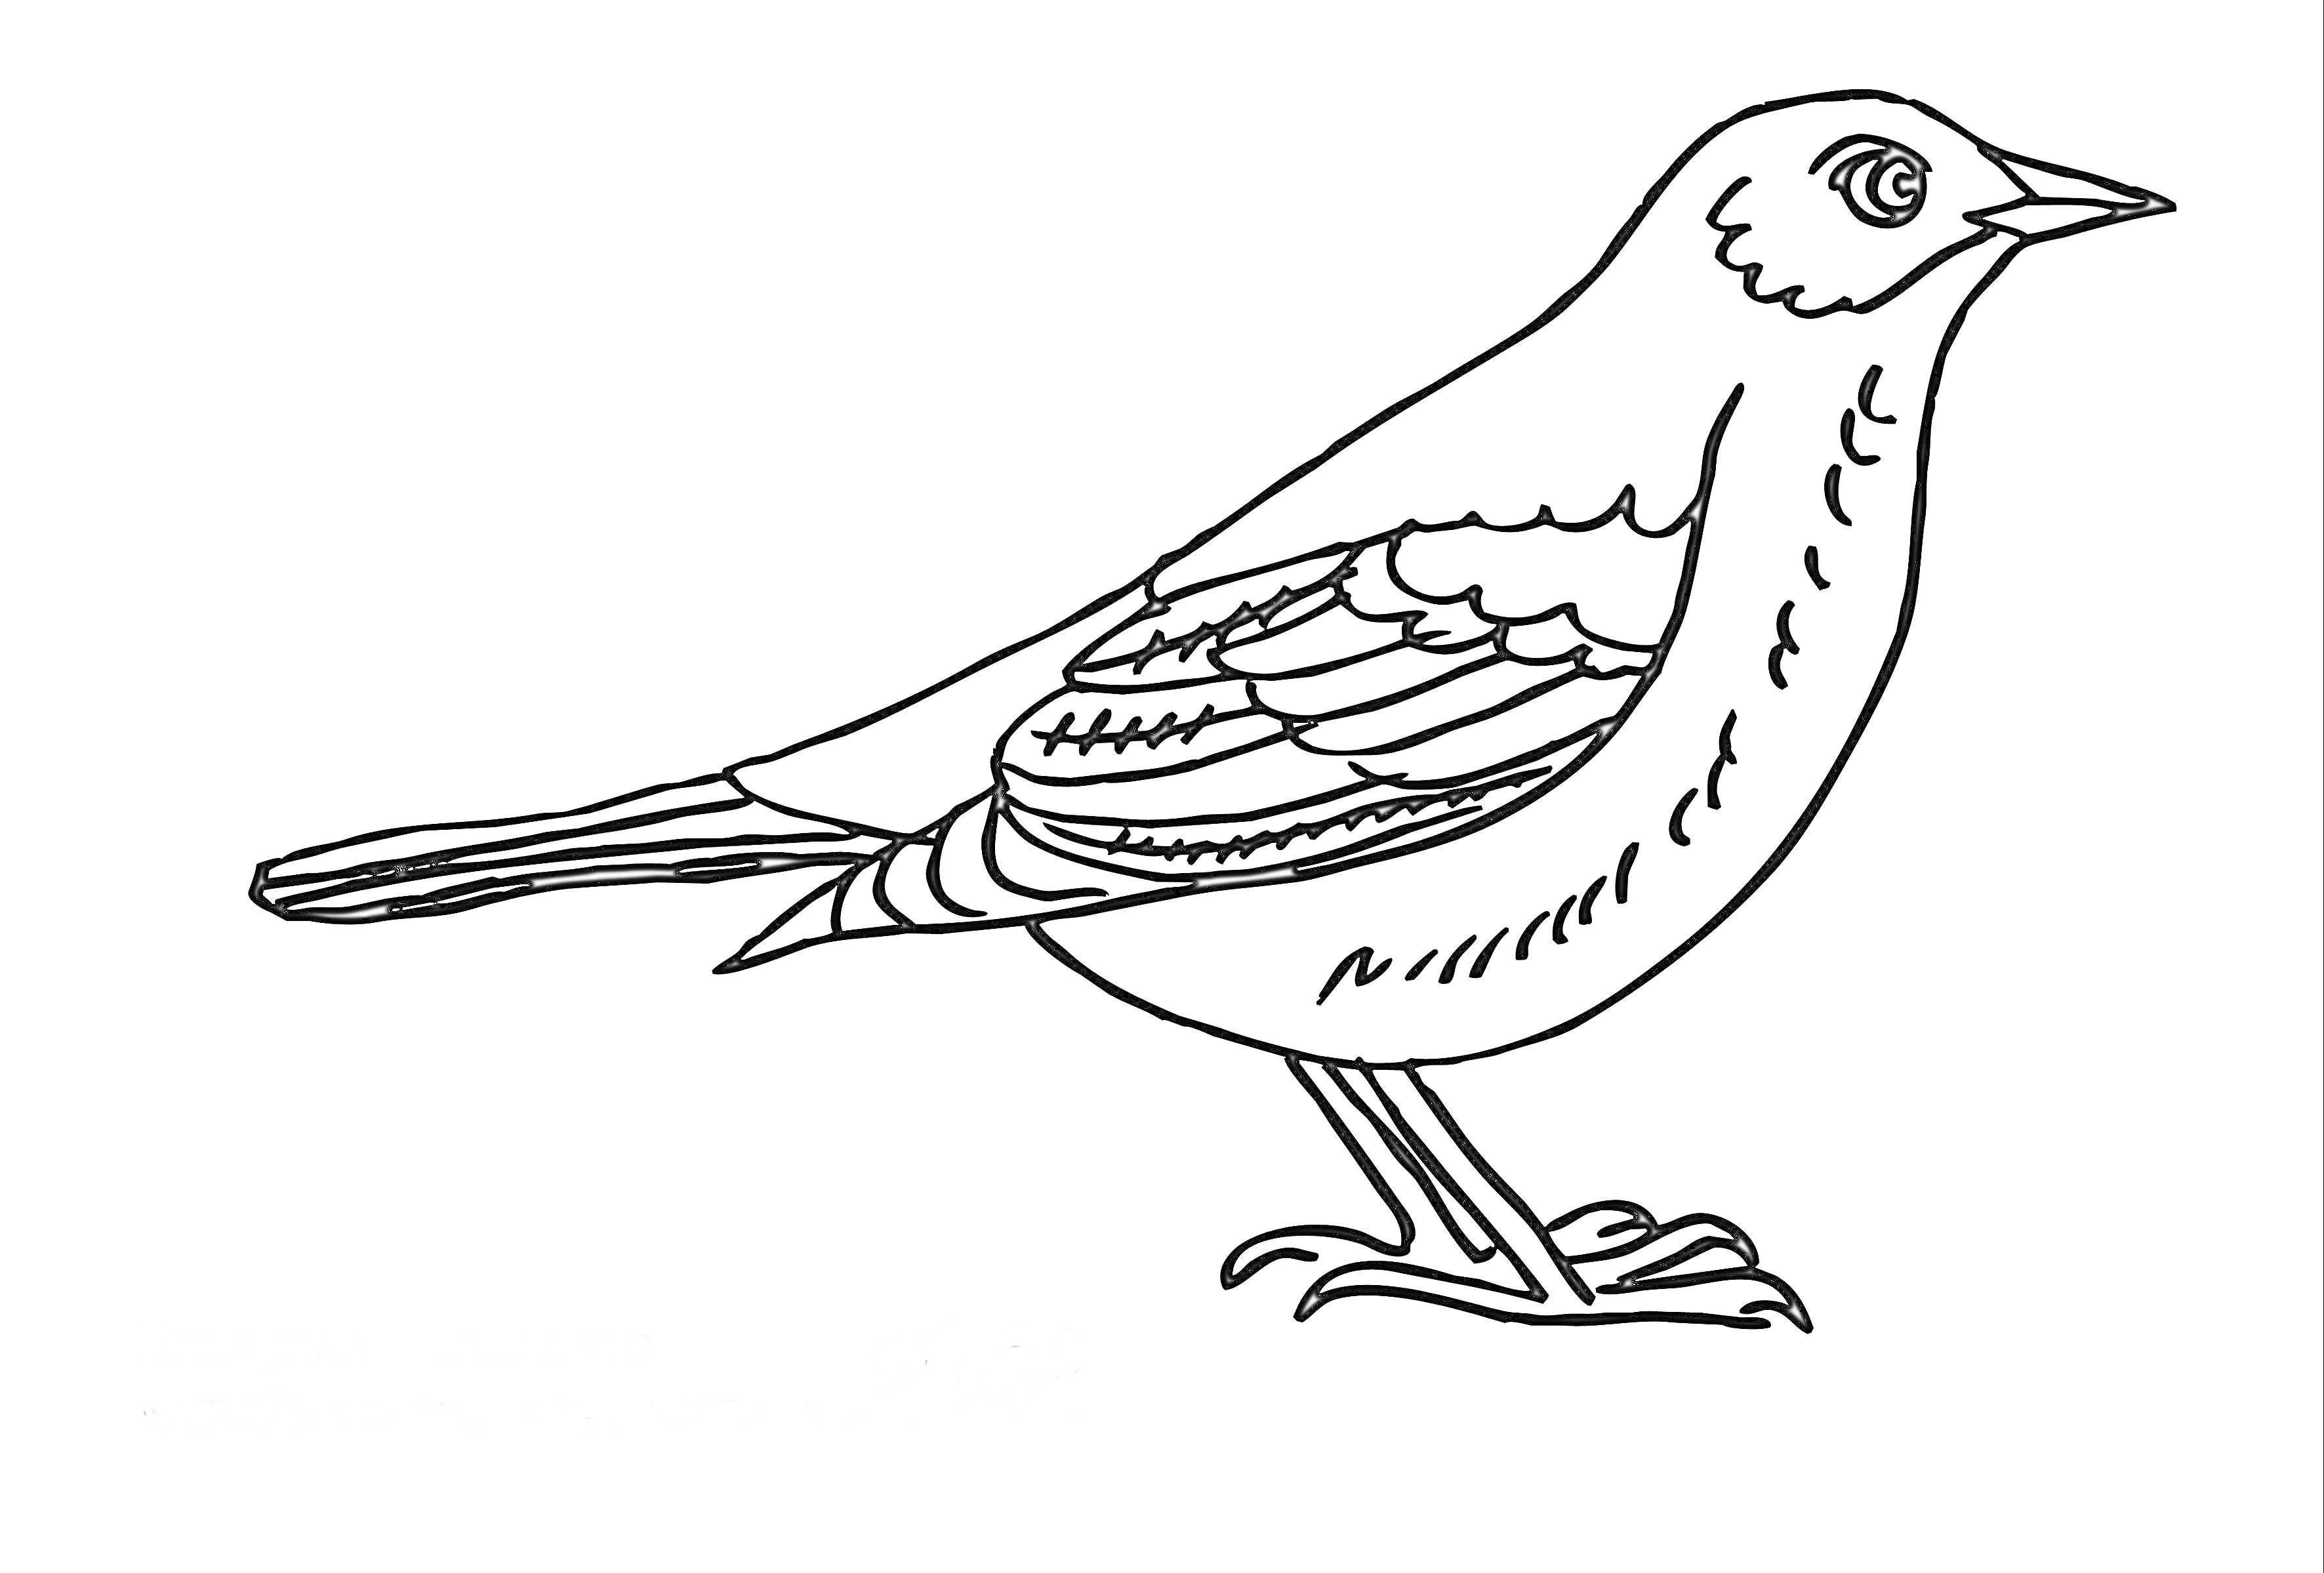 Перелетная птица - одиночная стоящая птица в профиль